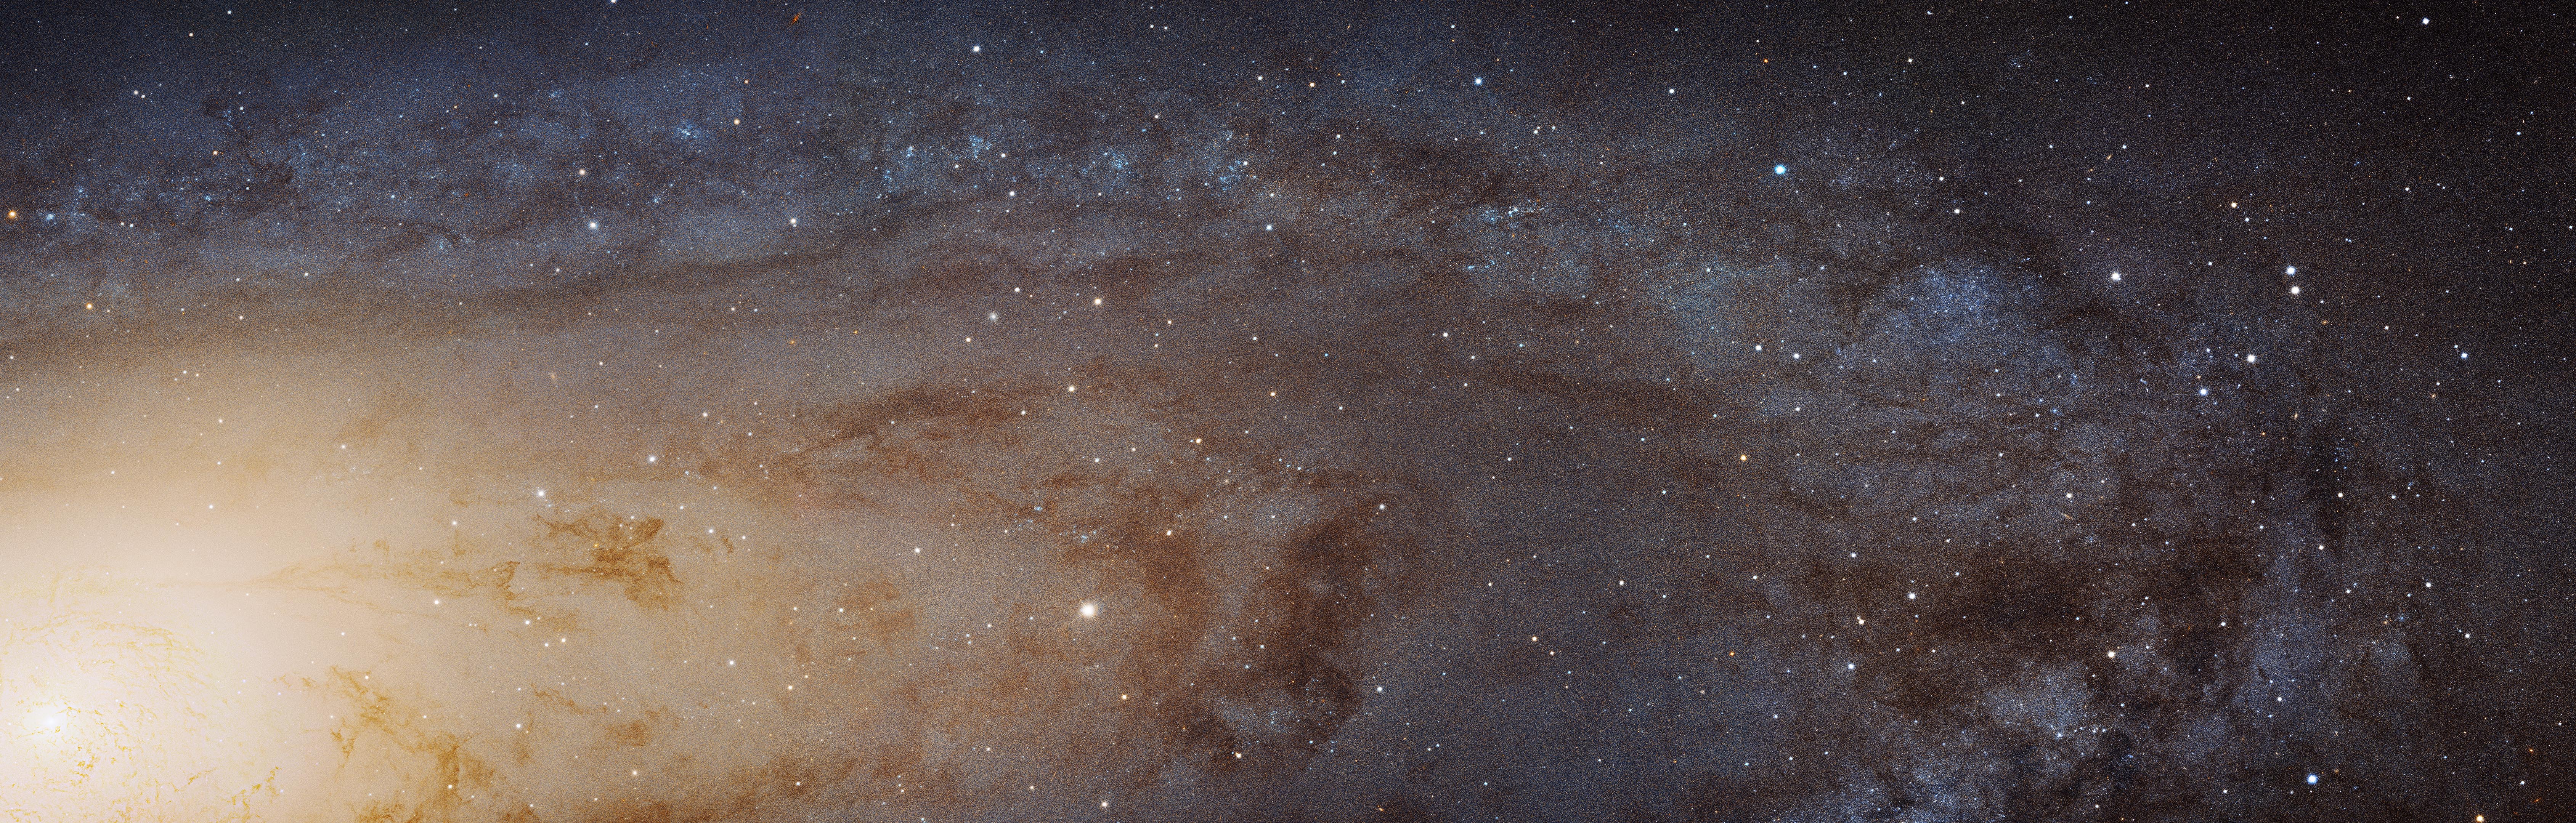 Space Andromeda Galaxy NASA Messier 31 6757x2160